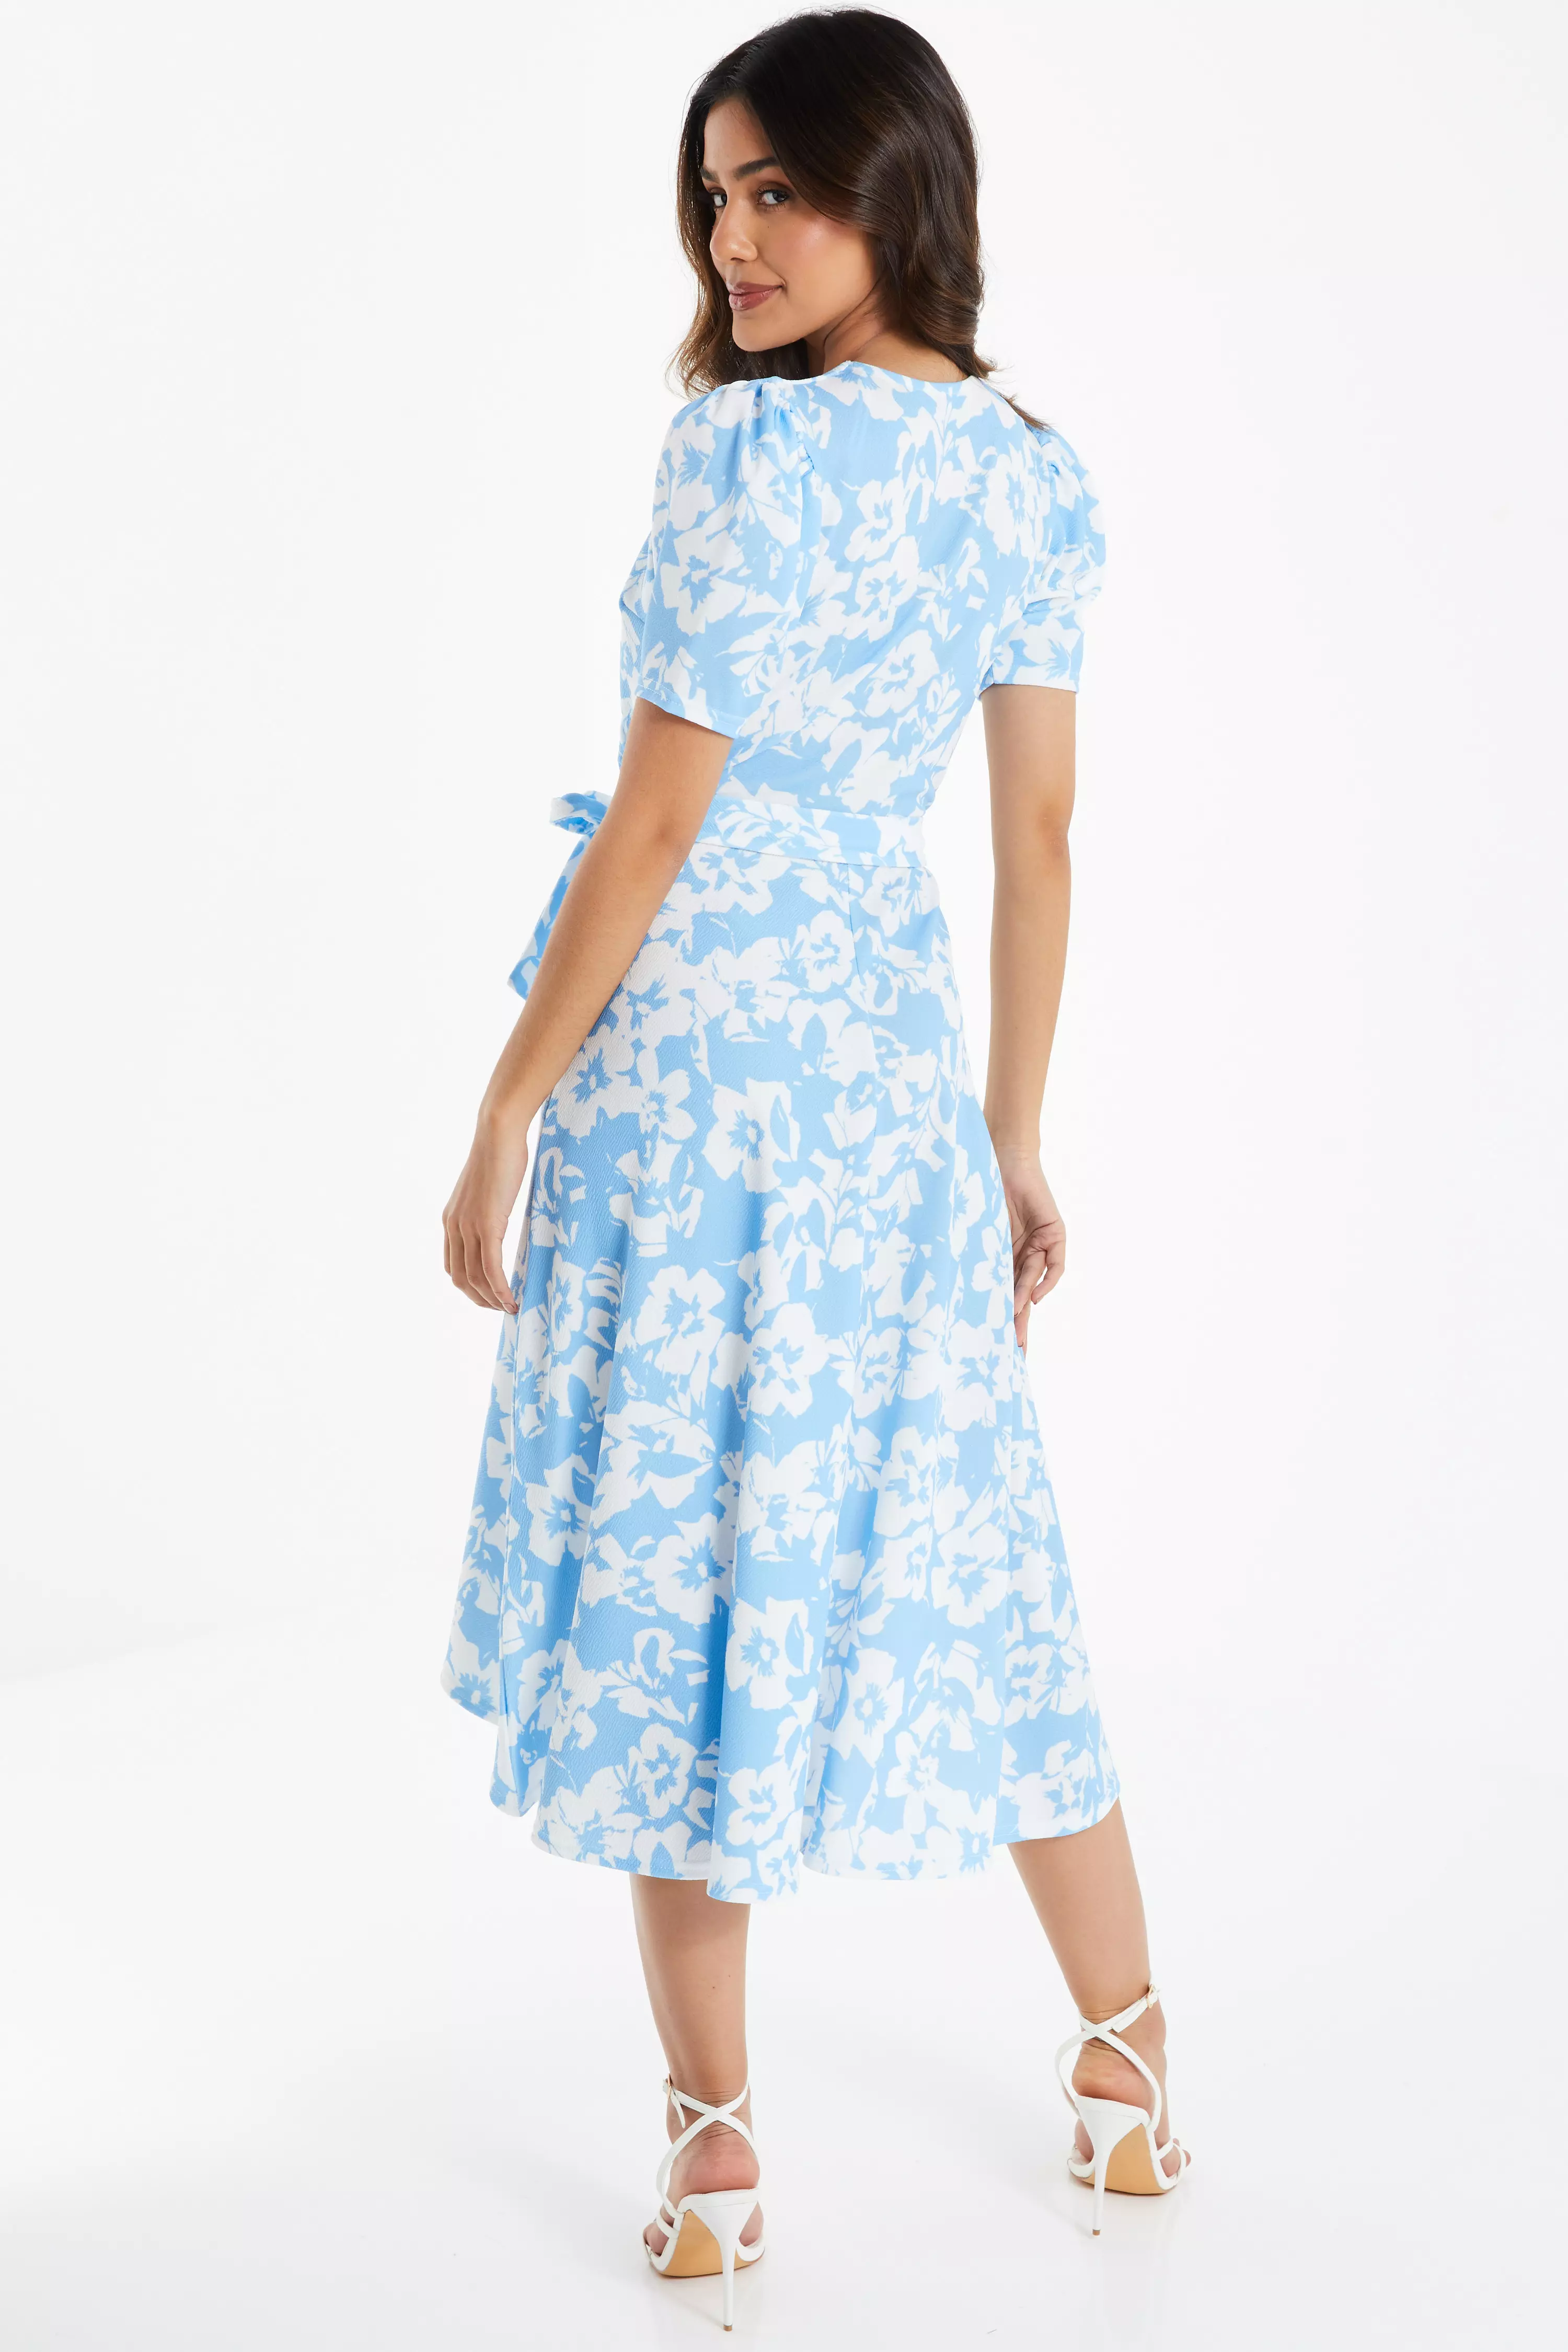 Blue Floral Print Wrap Midi Dress